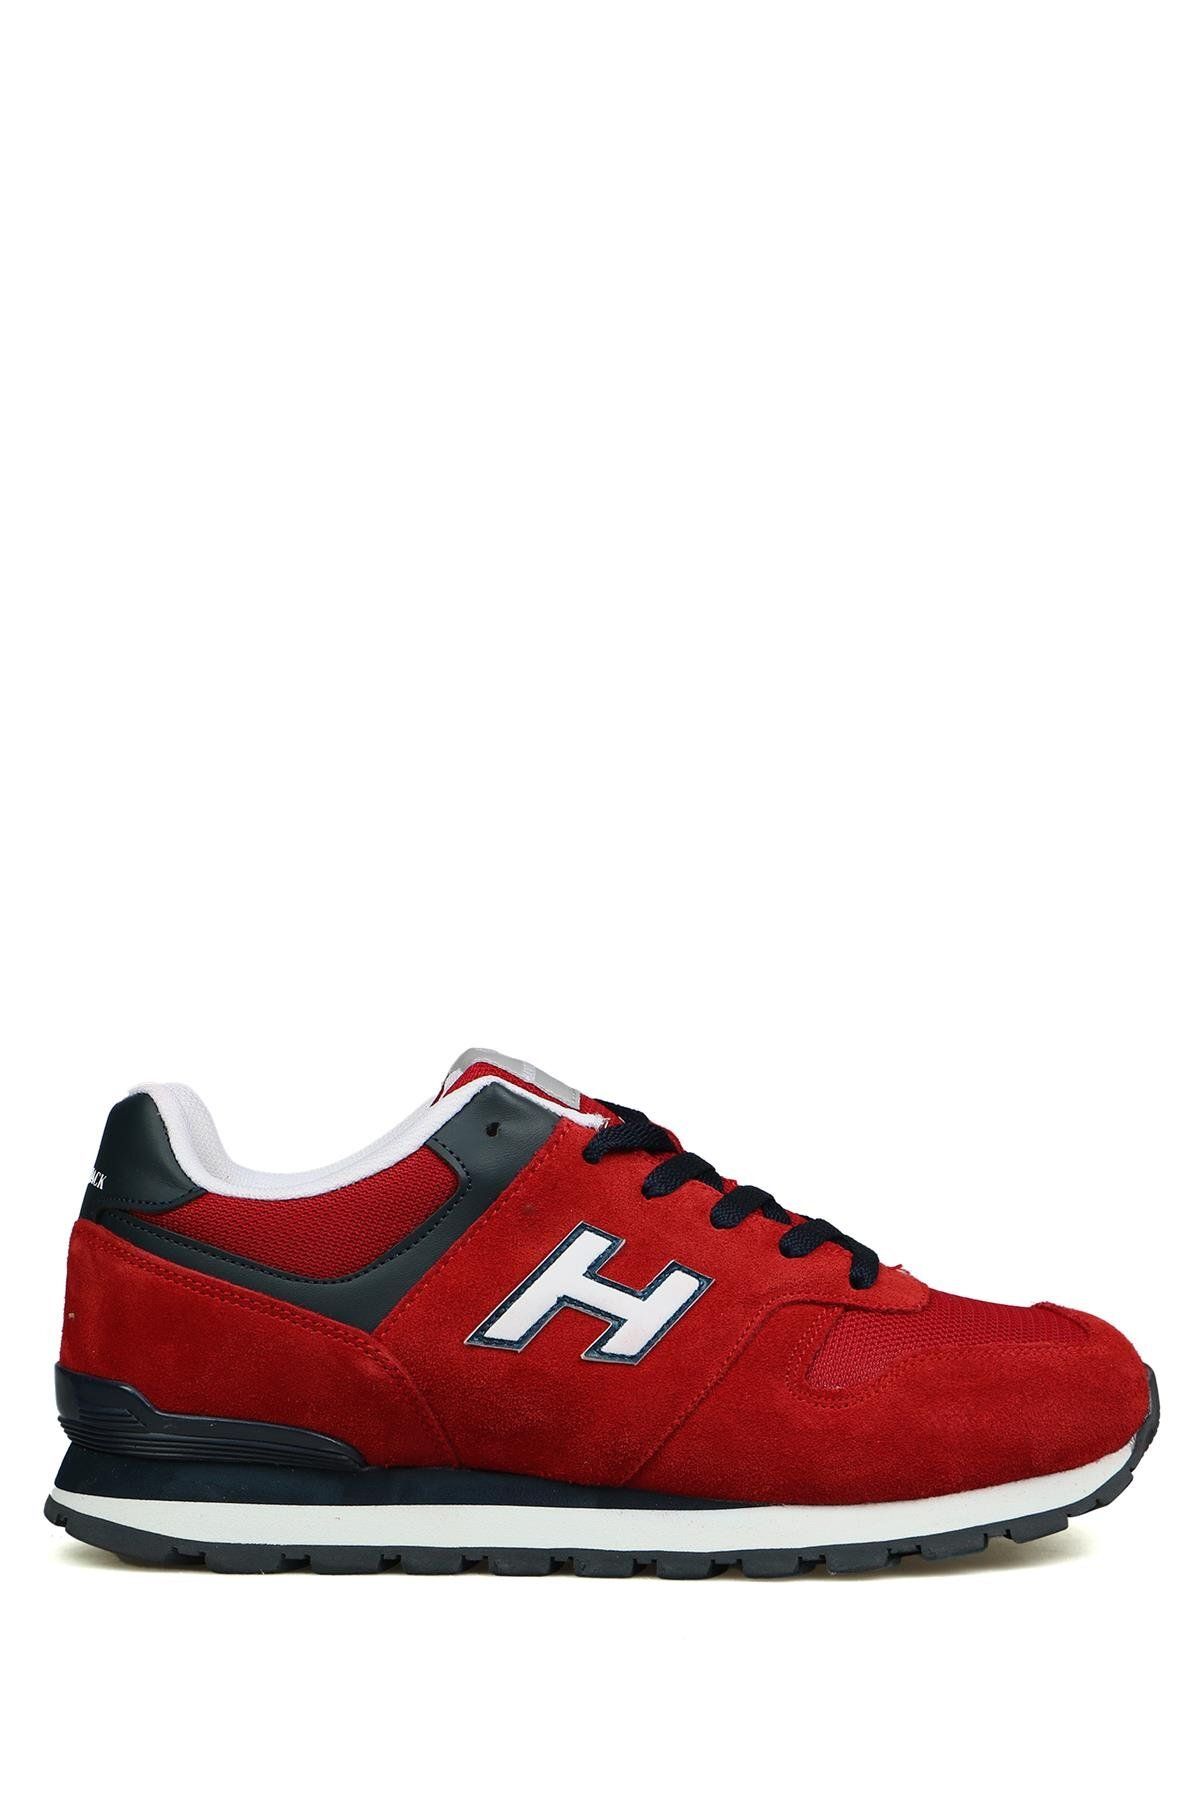 Hammer Jack Kolombiya Hakiki Deri Kırmızı Erkek Spor Ayakkabı 101 23538-m